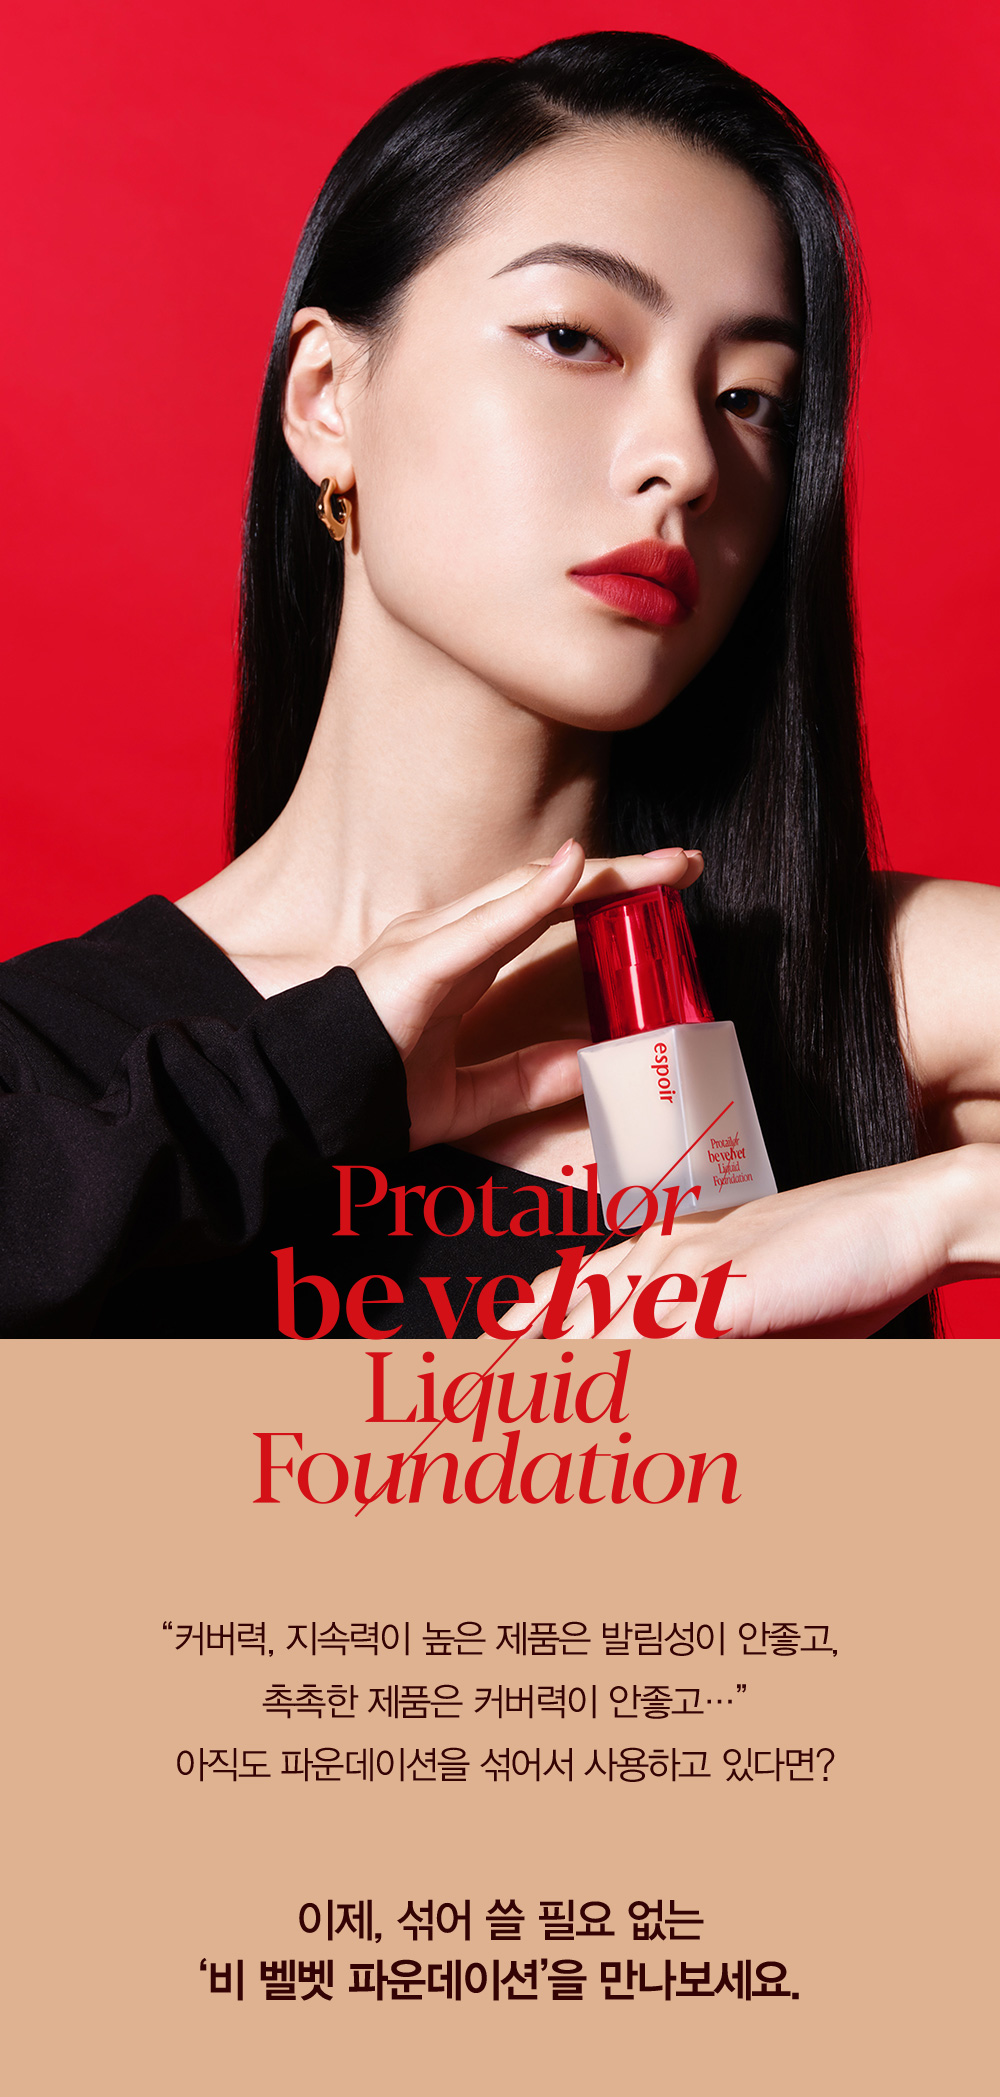 Protailor be velvet Liquid Foundation